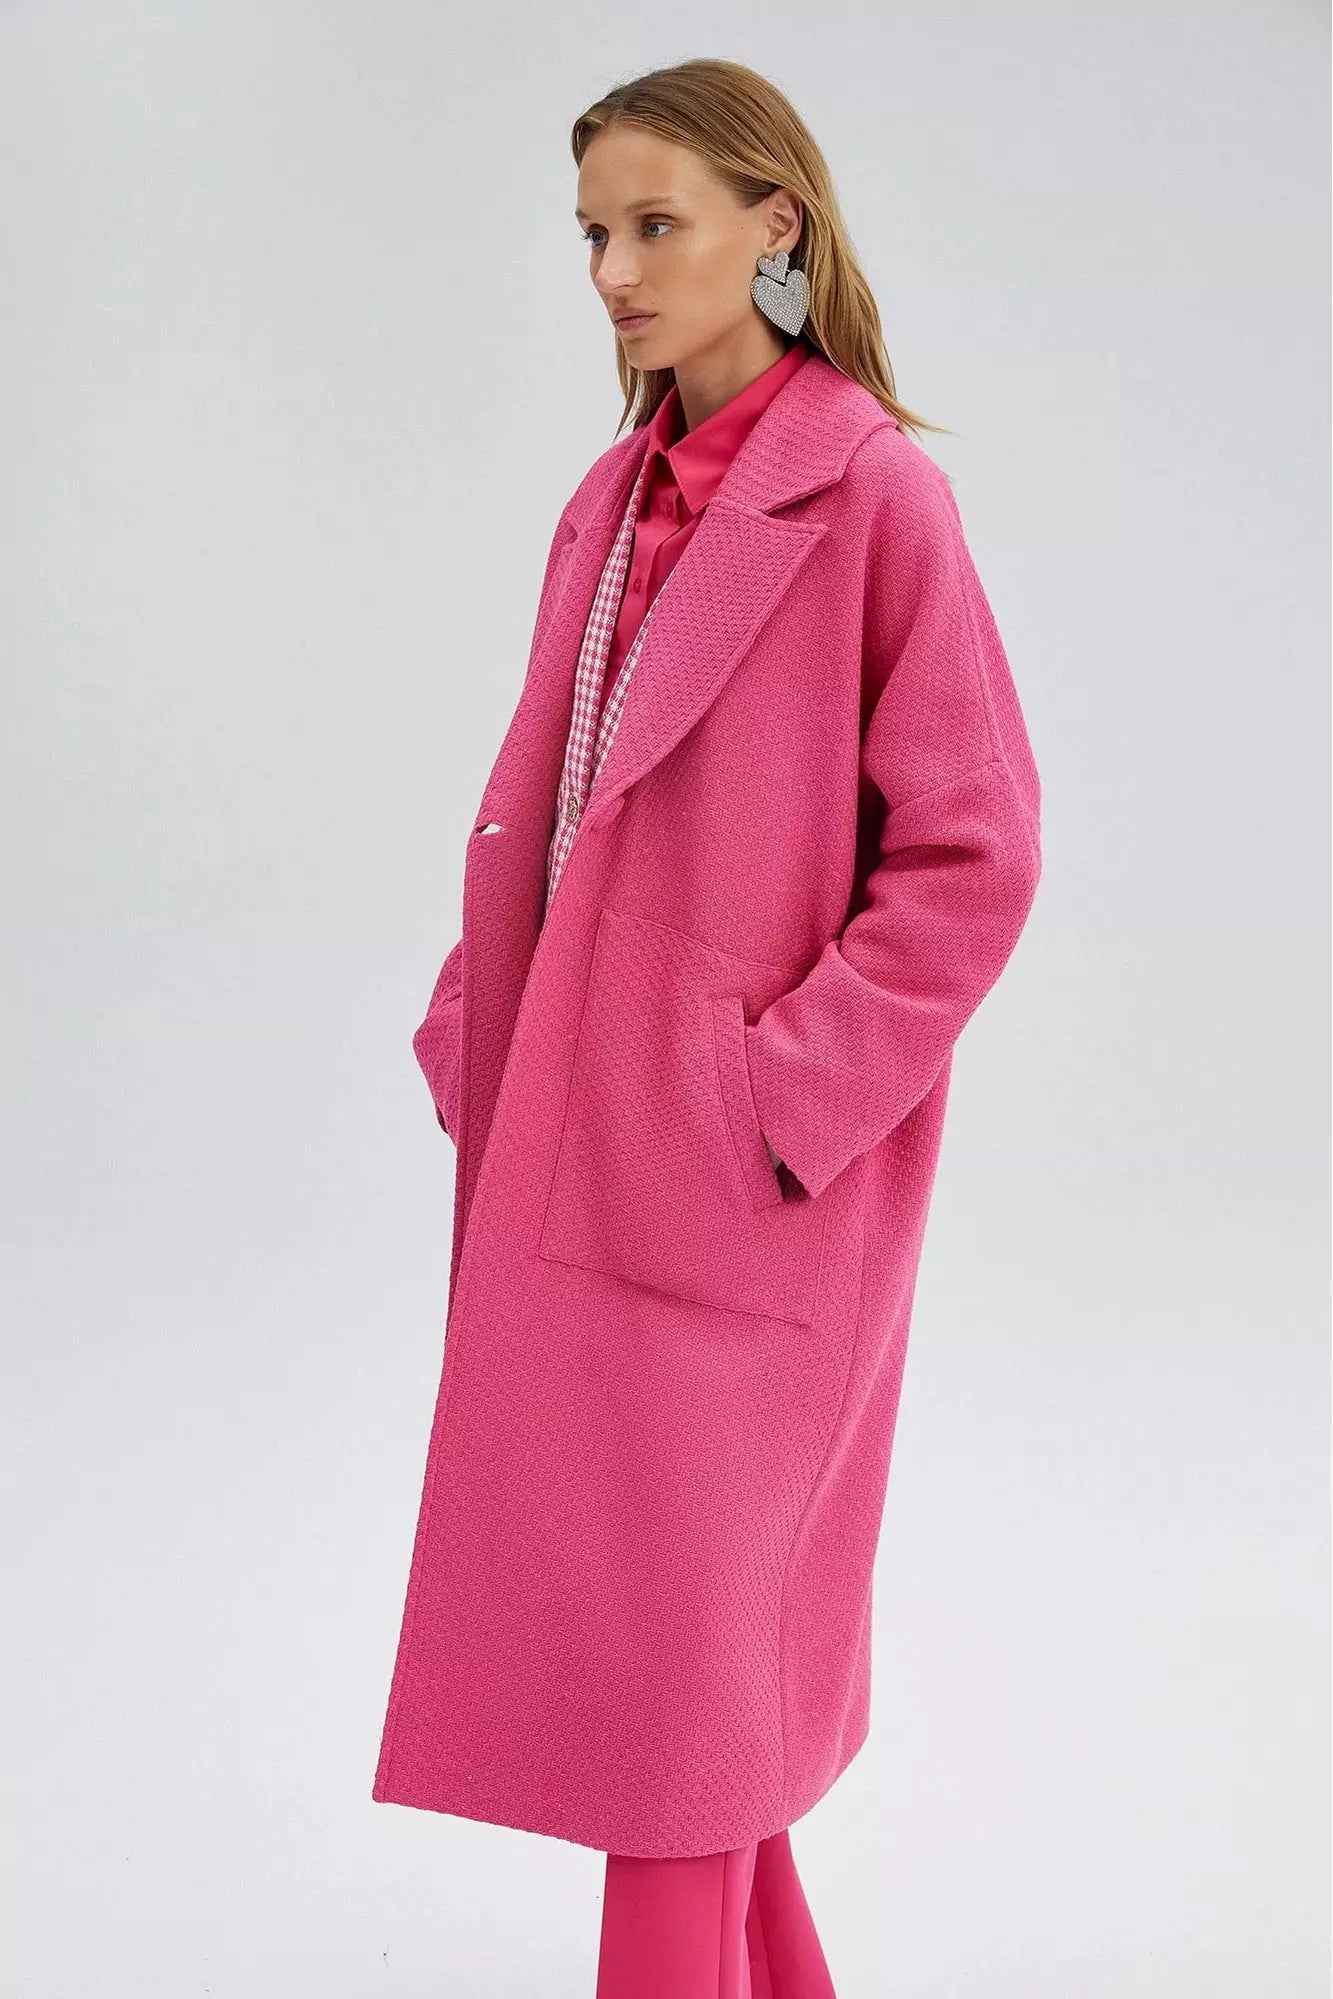 Ladies Nina Tweeted Coat in Pink - By Baano